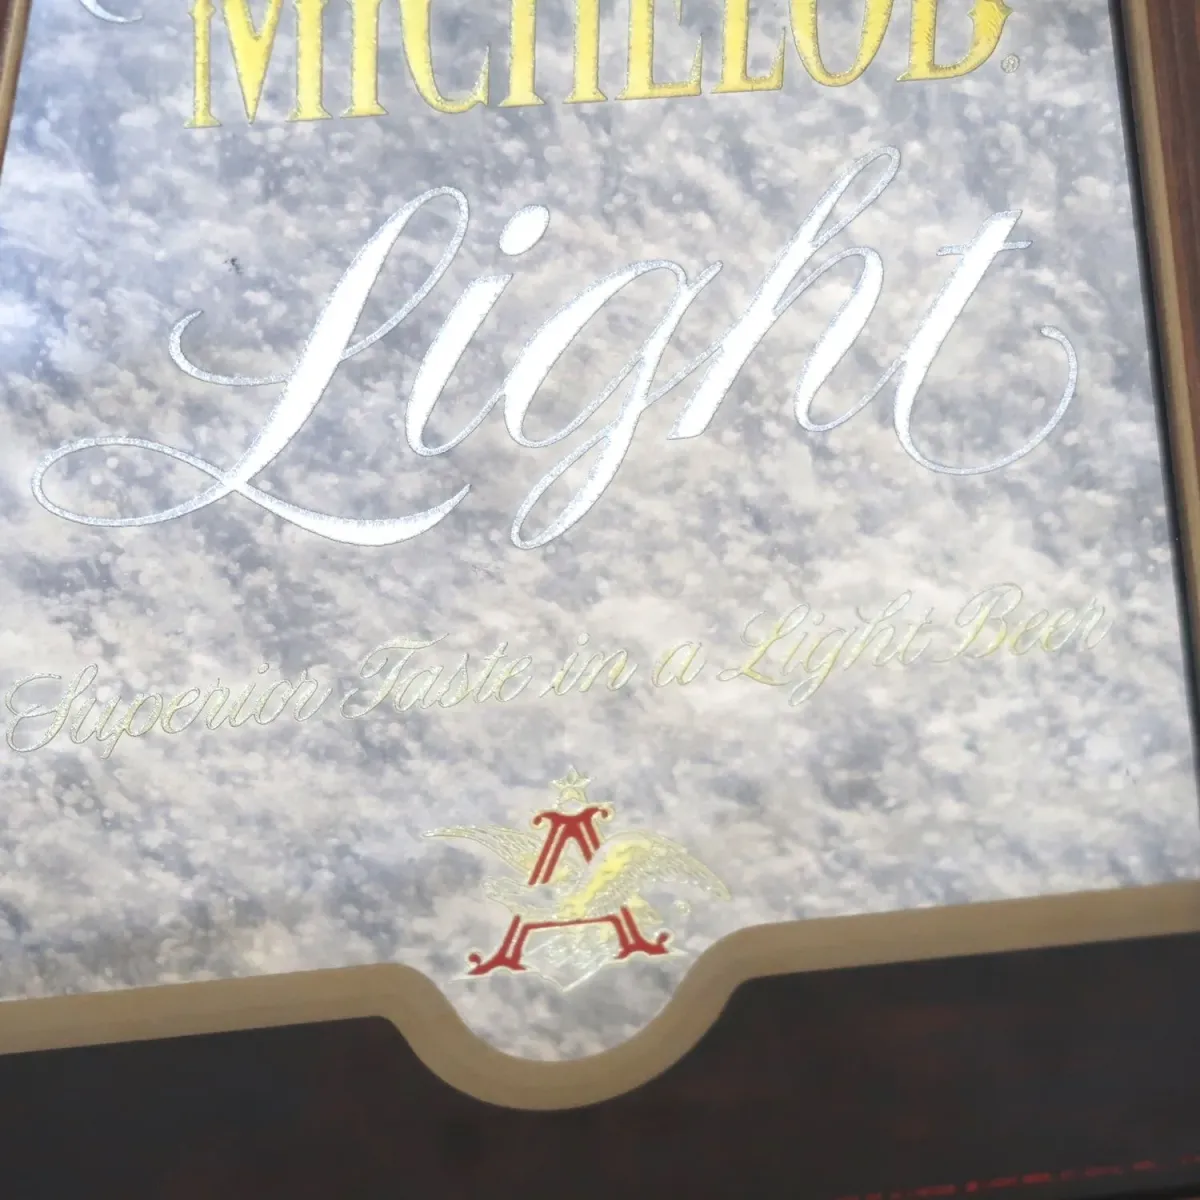 MICHELOB Light ビンテージ パブミラー